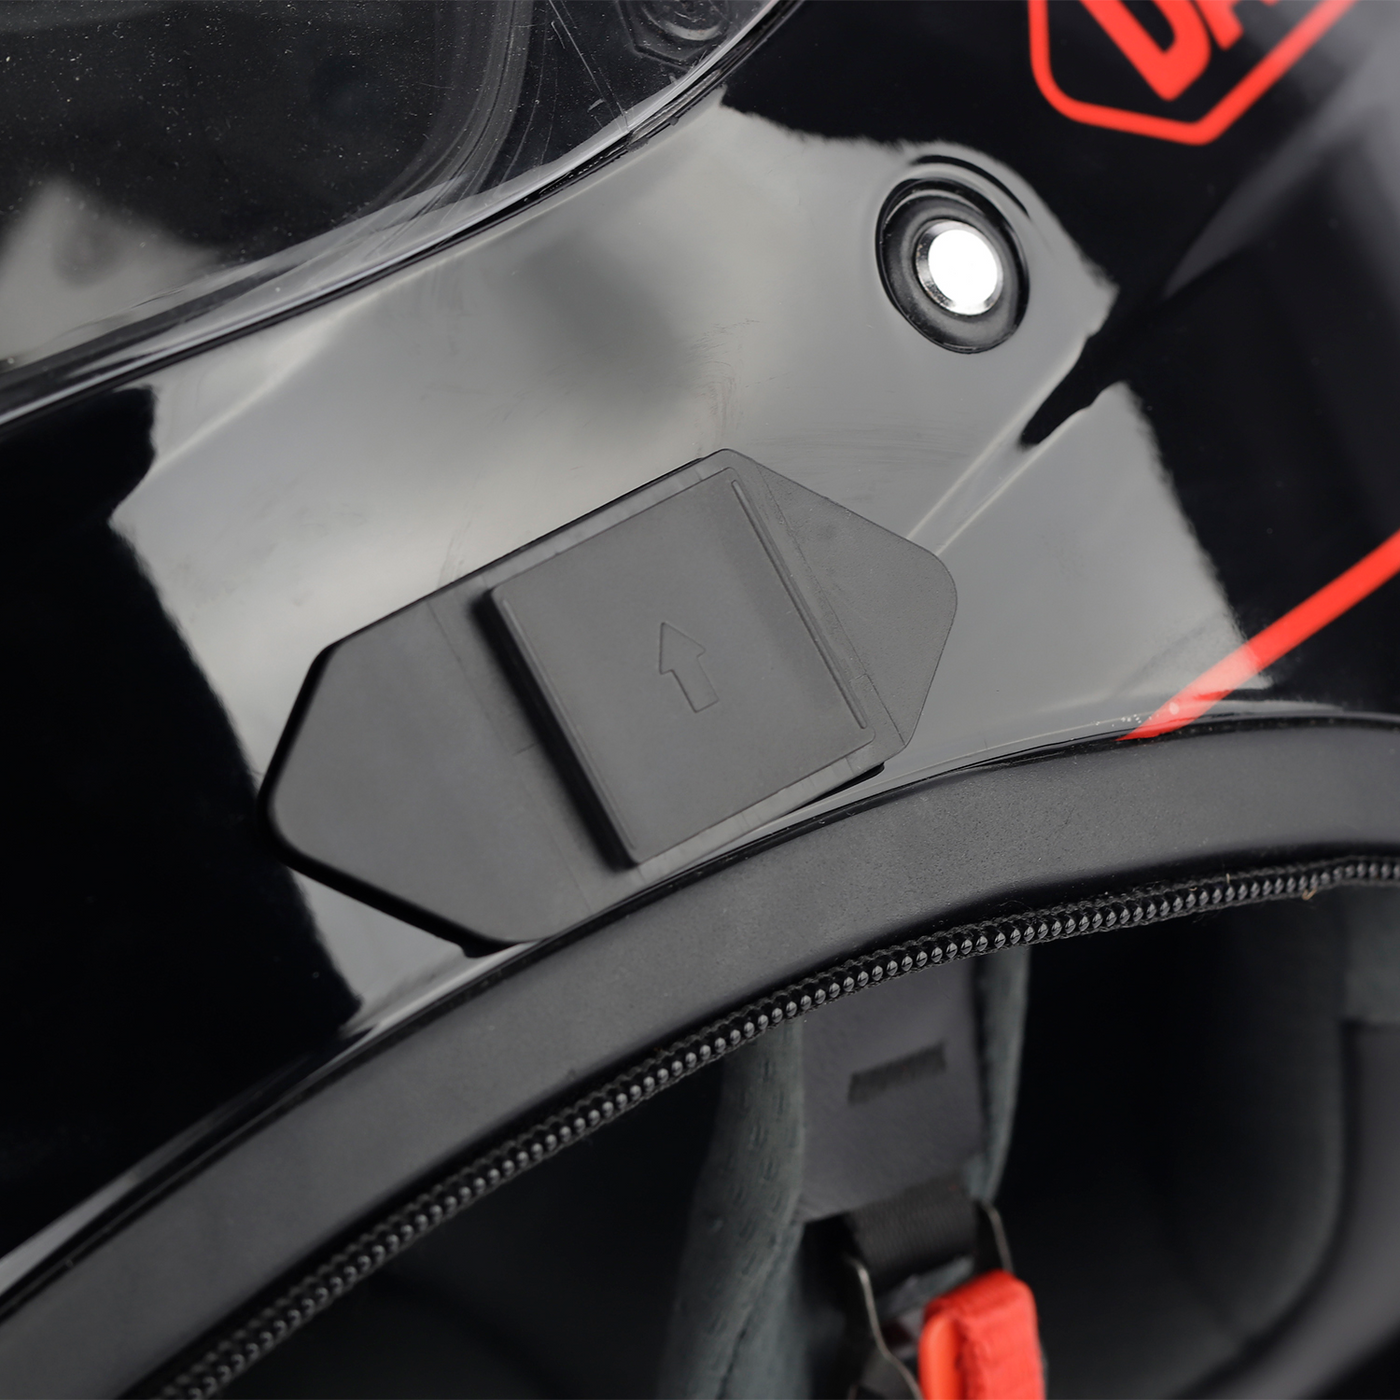 EJEAS Motorcycle Helmet Intercom Headset Clips for Q7/Q4/Q2